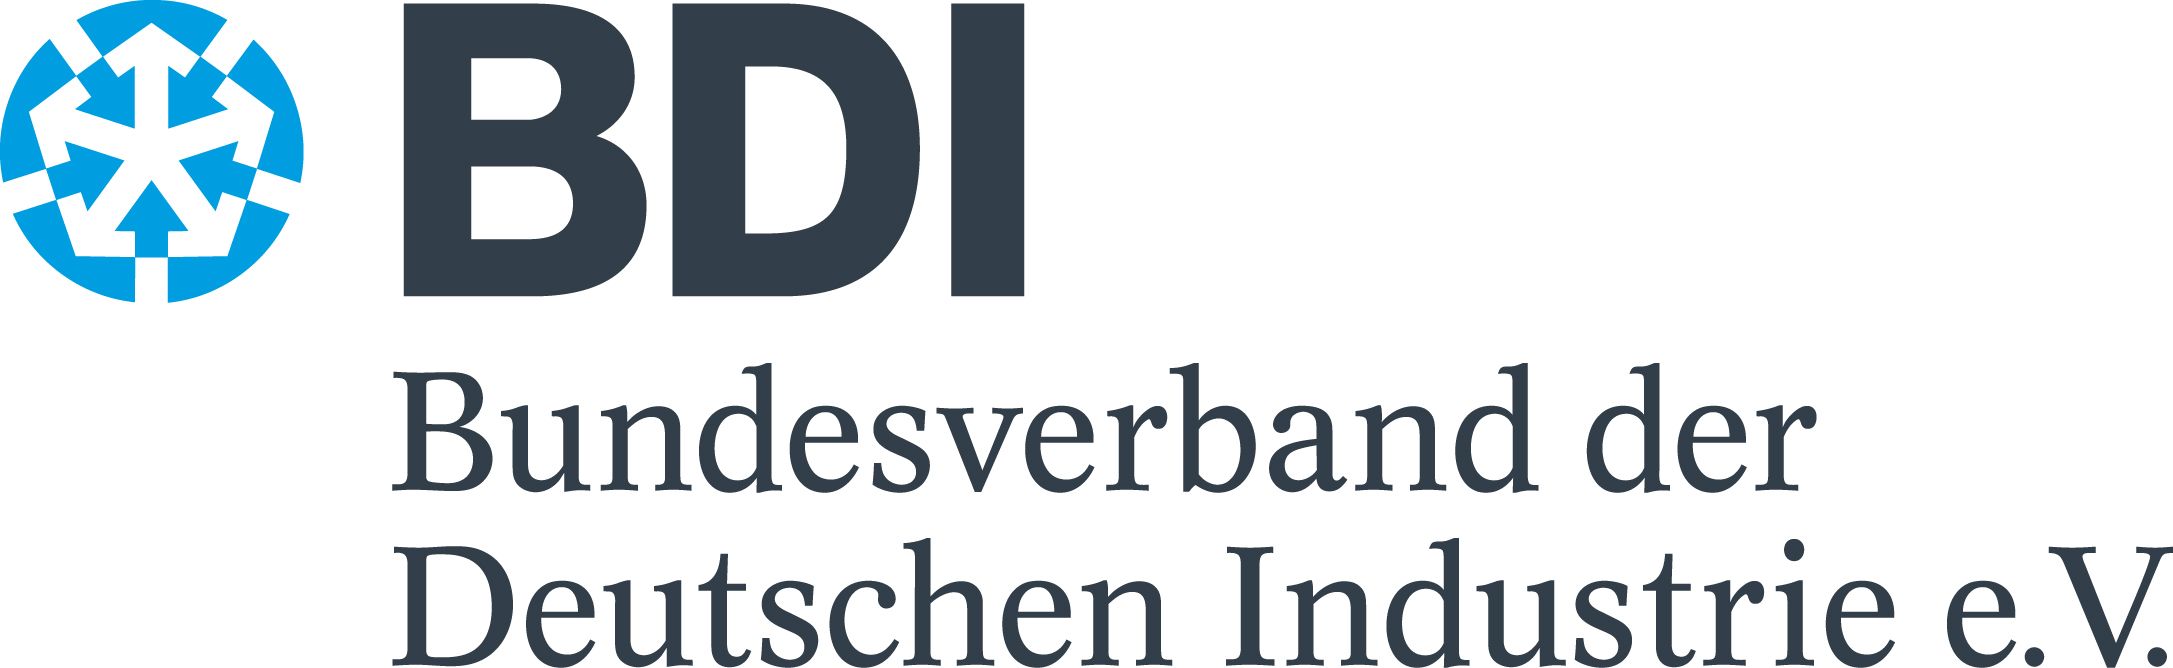 Federation of German Industries (BDI) Logo